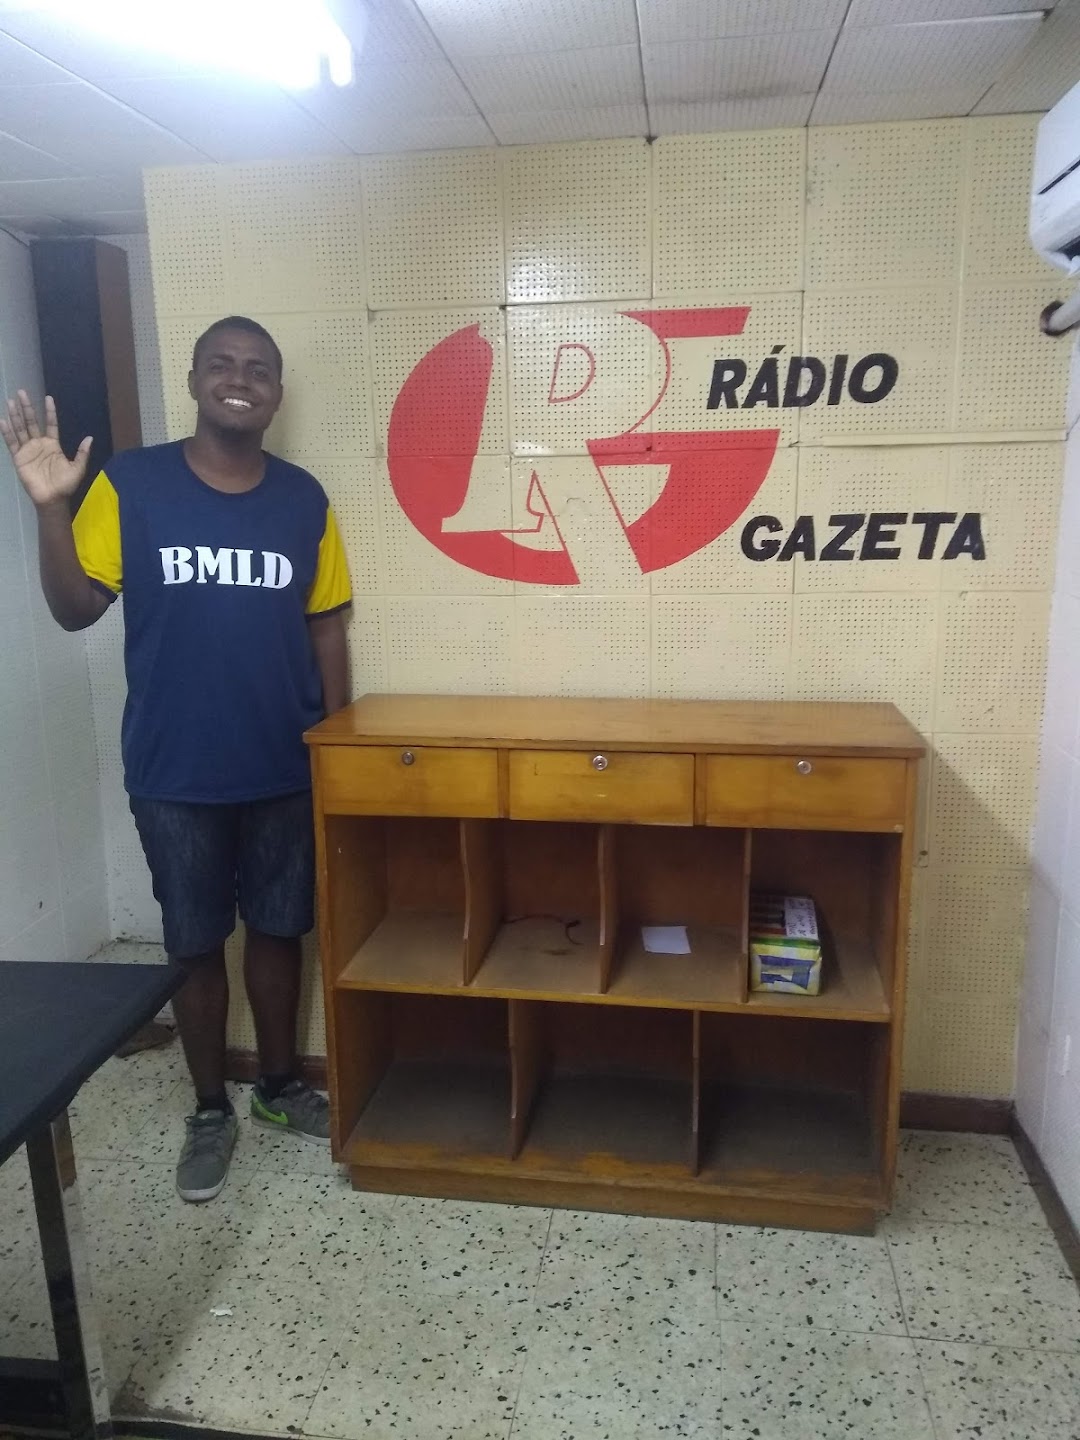 Rádio Gazeta de Alegrete